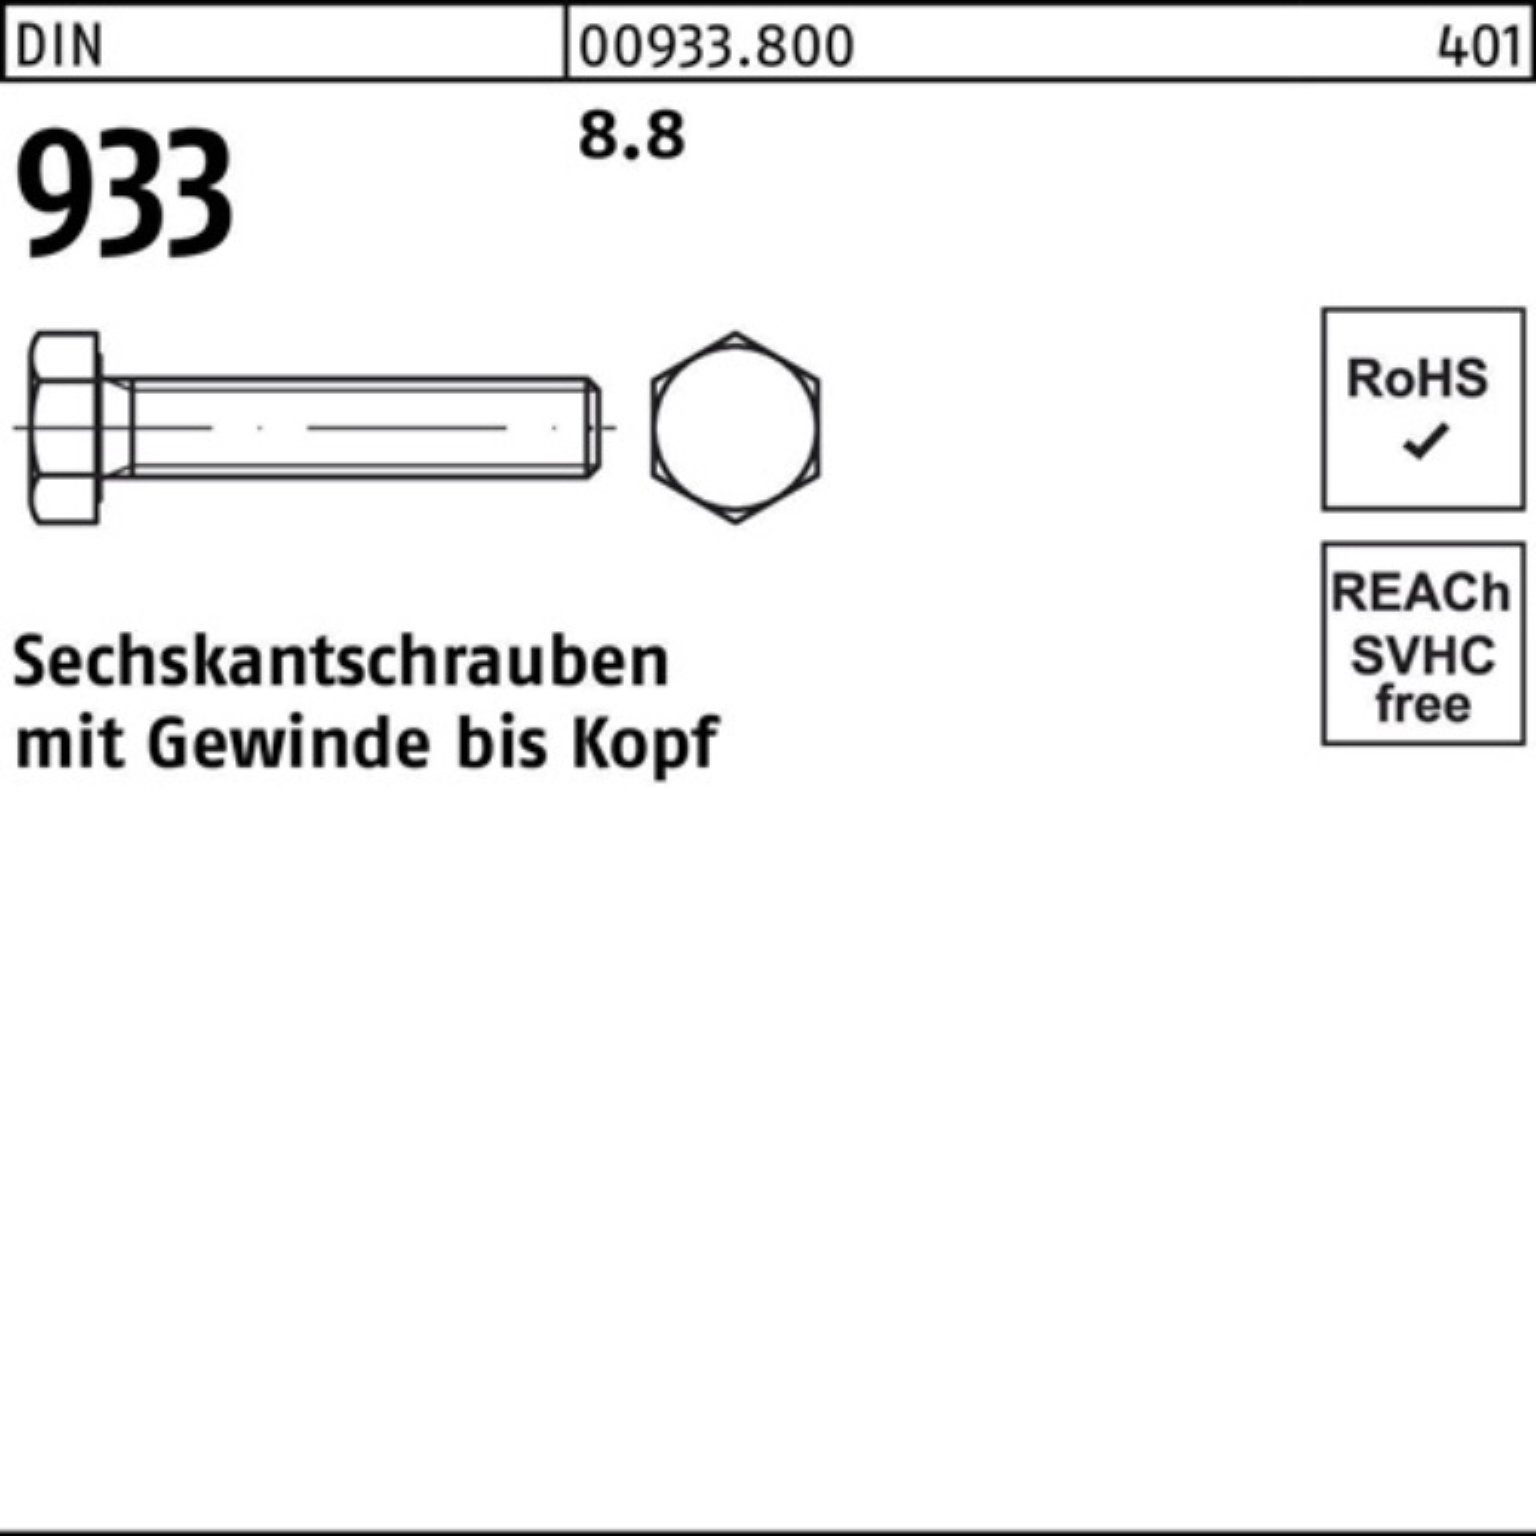 Reyher Sechskantschraube Sechskantschraube M30x DIN Stück 8 933 VG Pack 55 933 100er 1 DIN 8.8